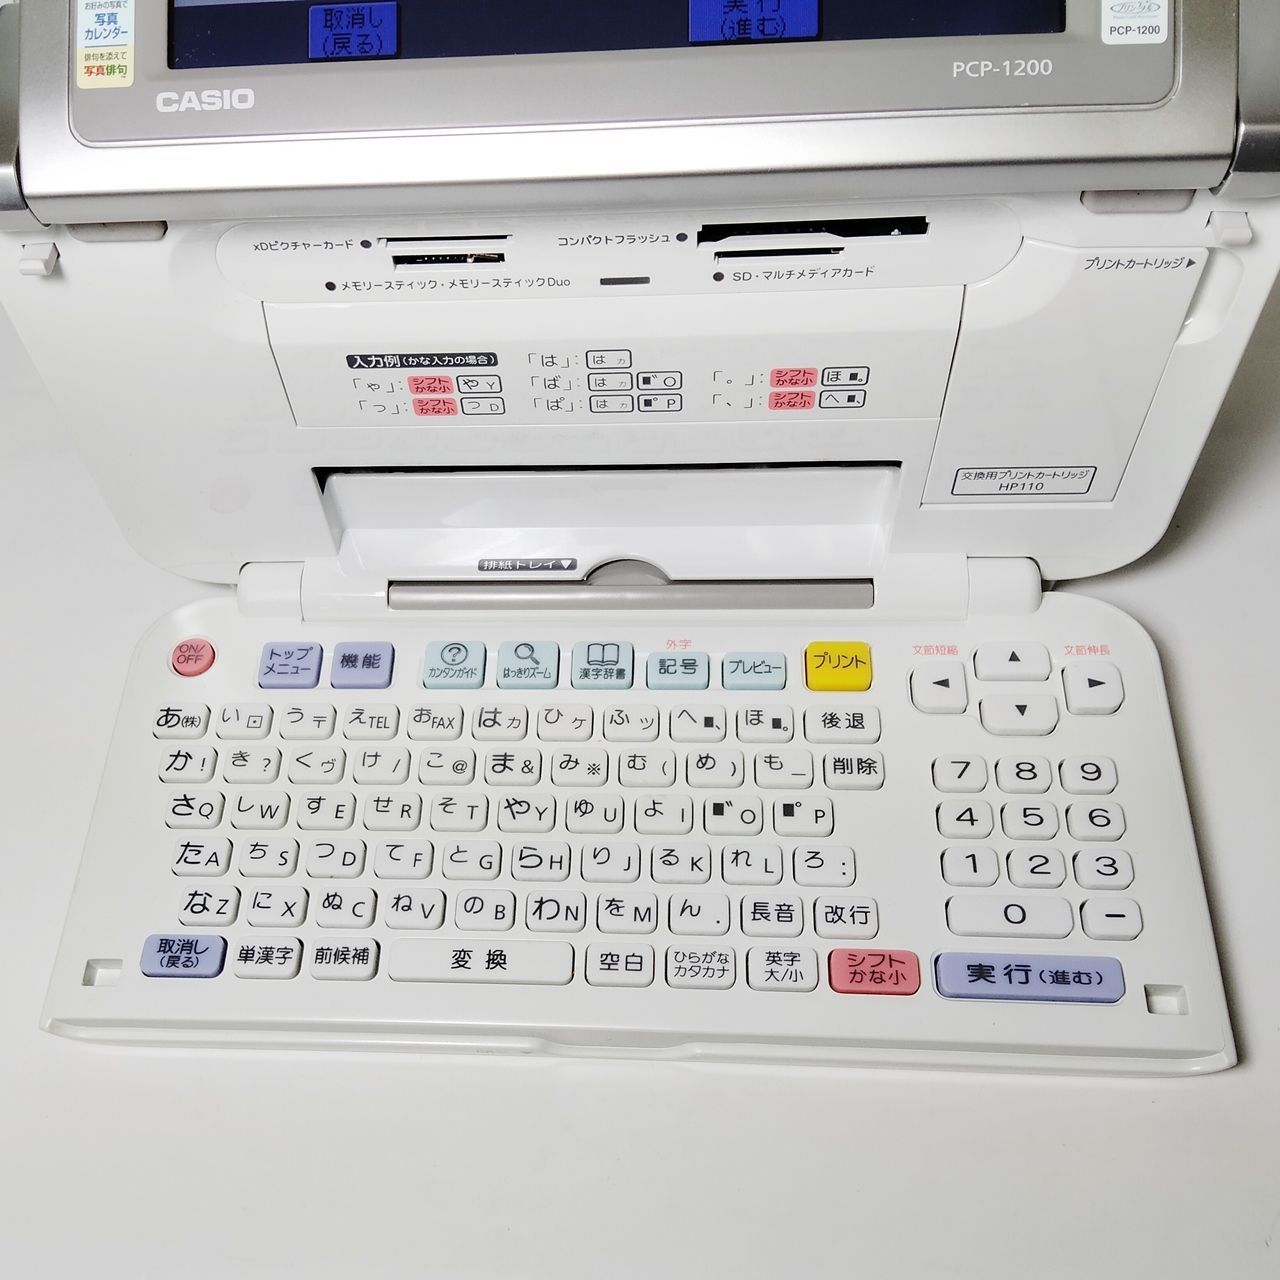 カシオ計算機 カシオ デジタル写真プリンター 「プリン写ル」 PCP-1200